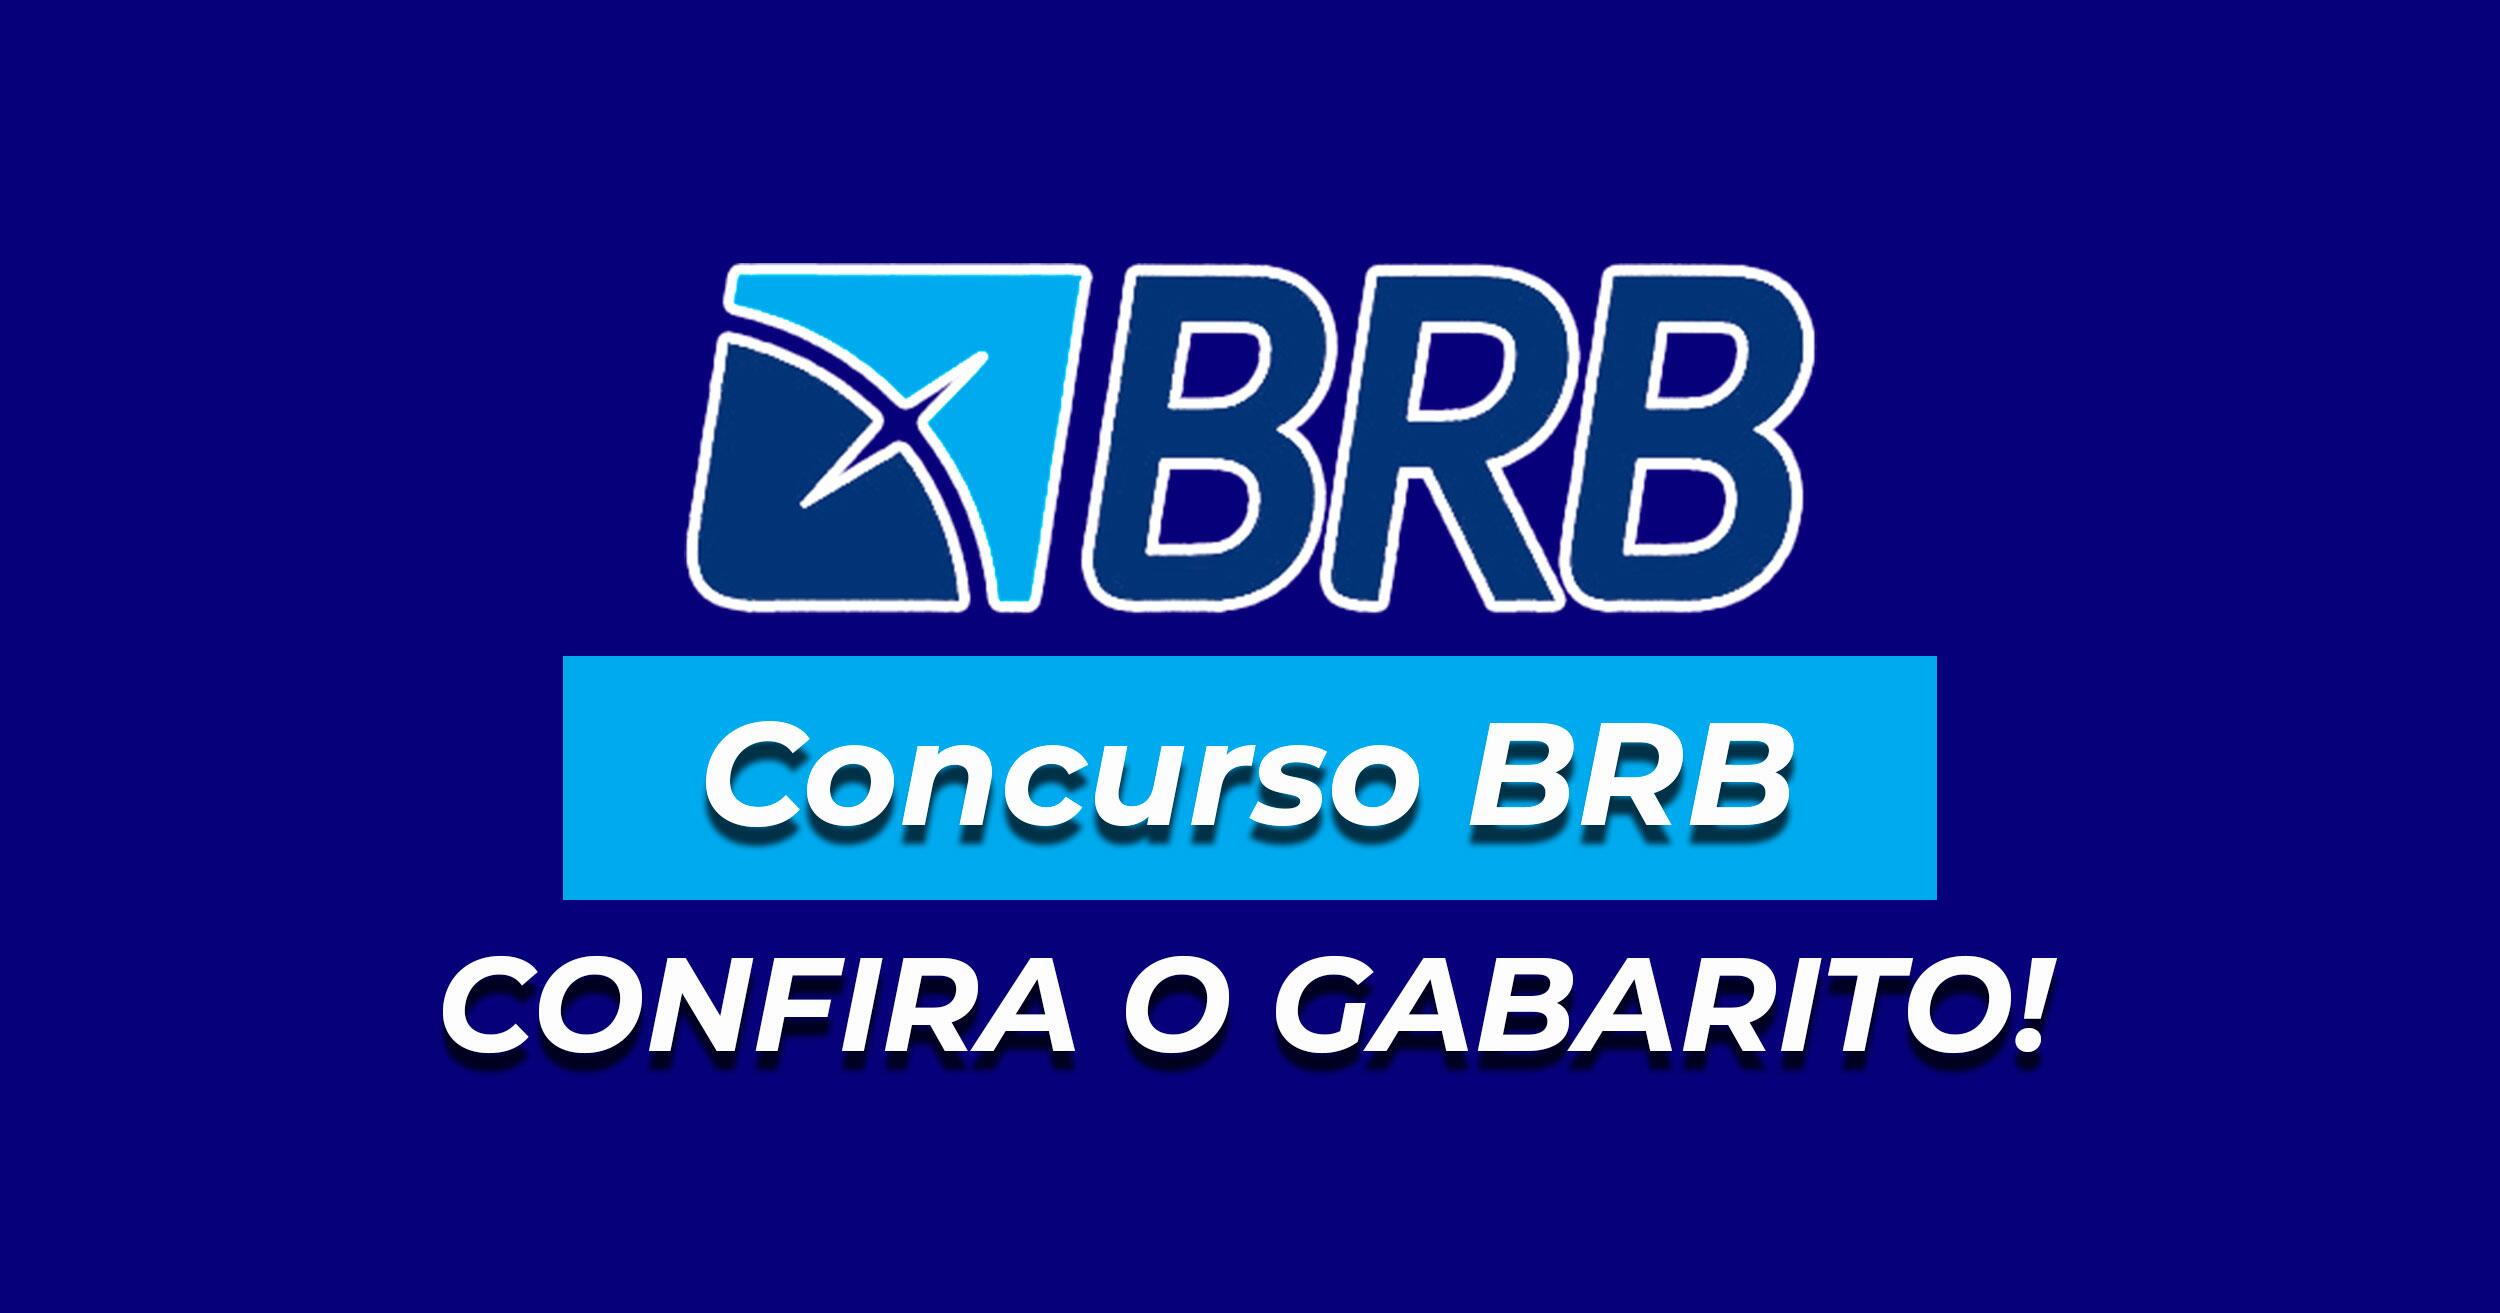 Imagem com a frase: BRB - Concurso BRB, confira gabarito